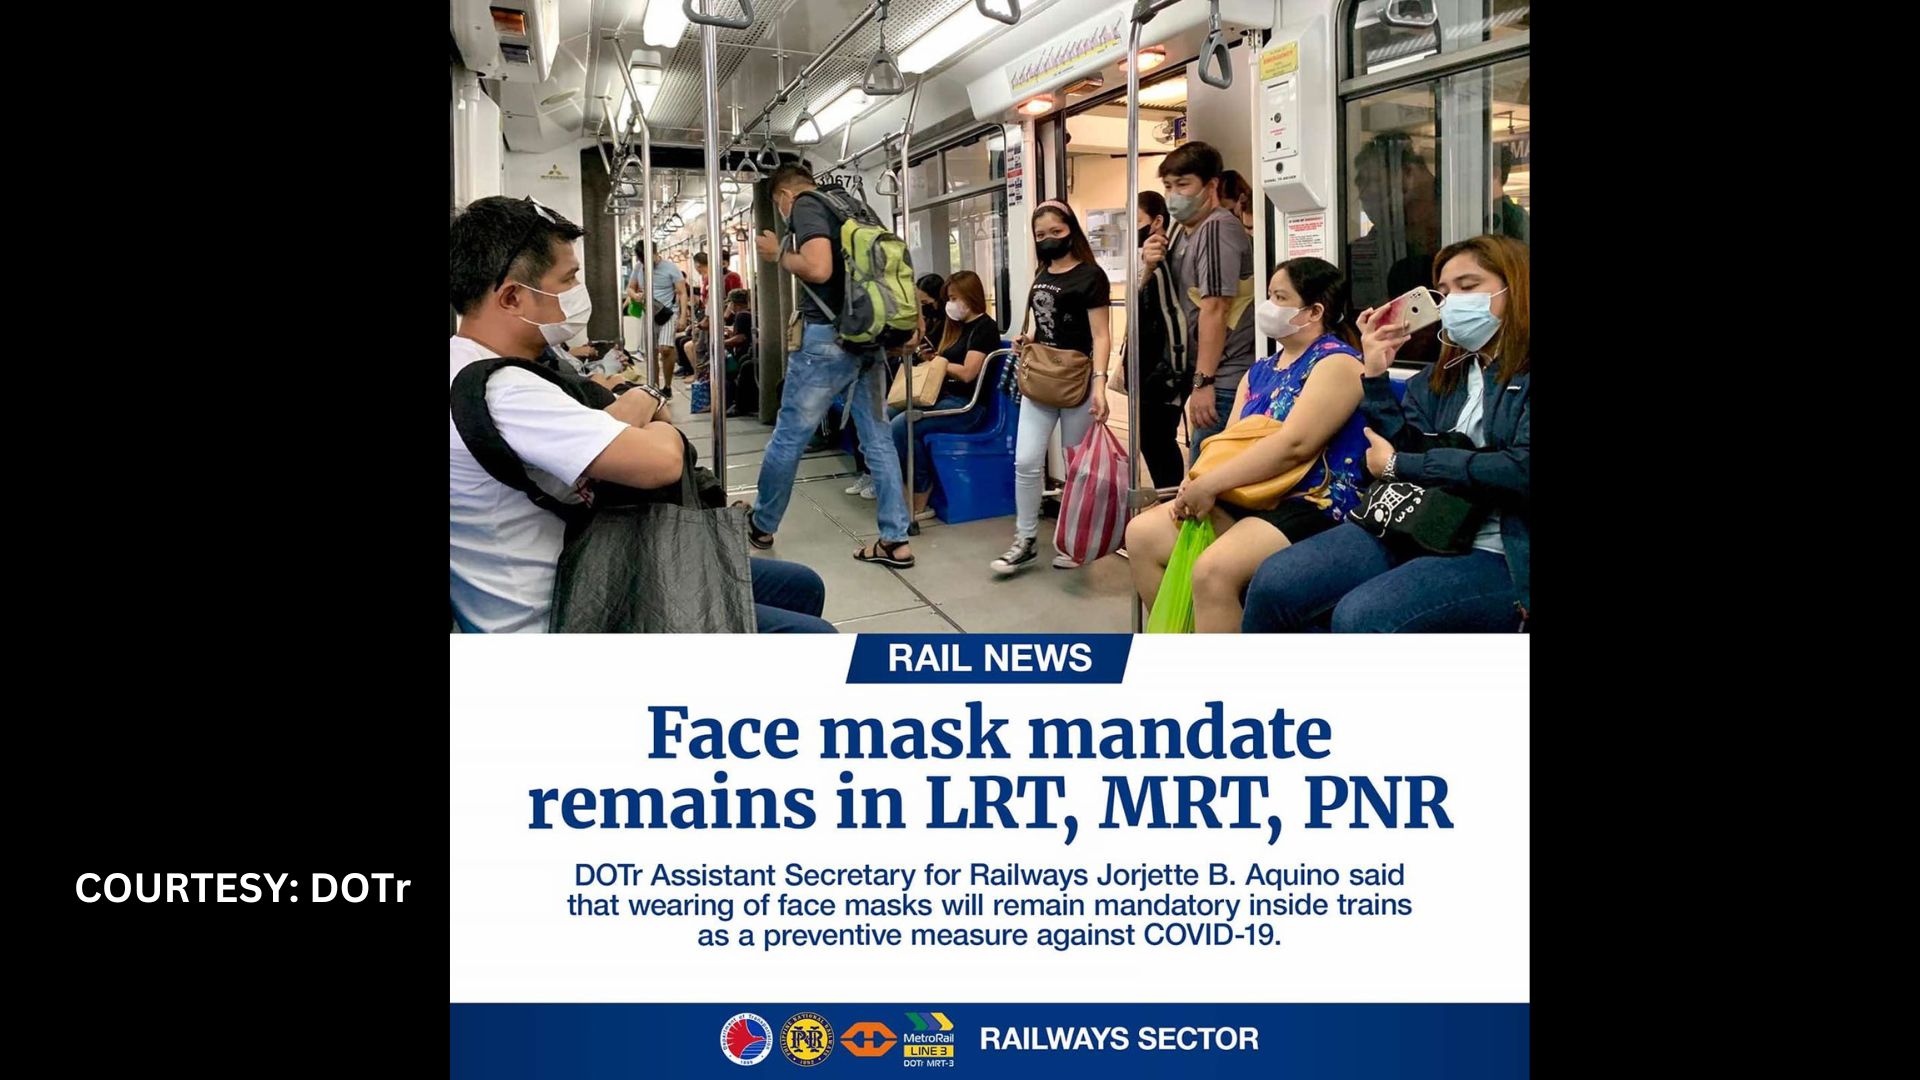 Pagsusuot ng face mask sa loob ng mga tren mandatory pa din ayon sa DOTr